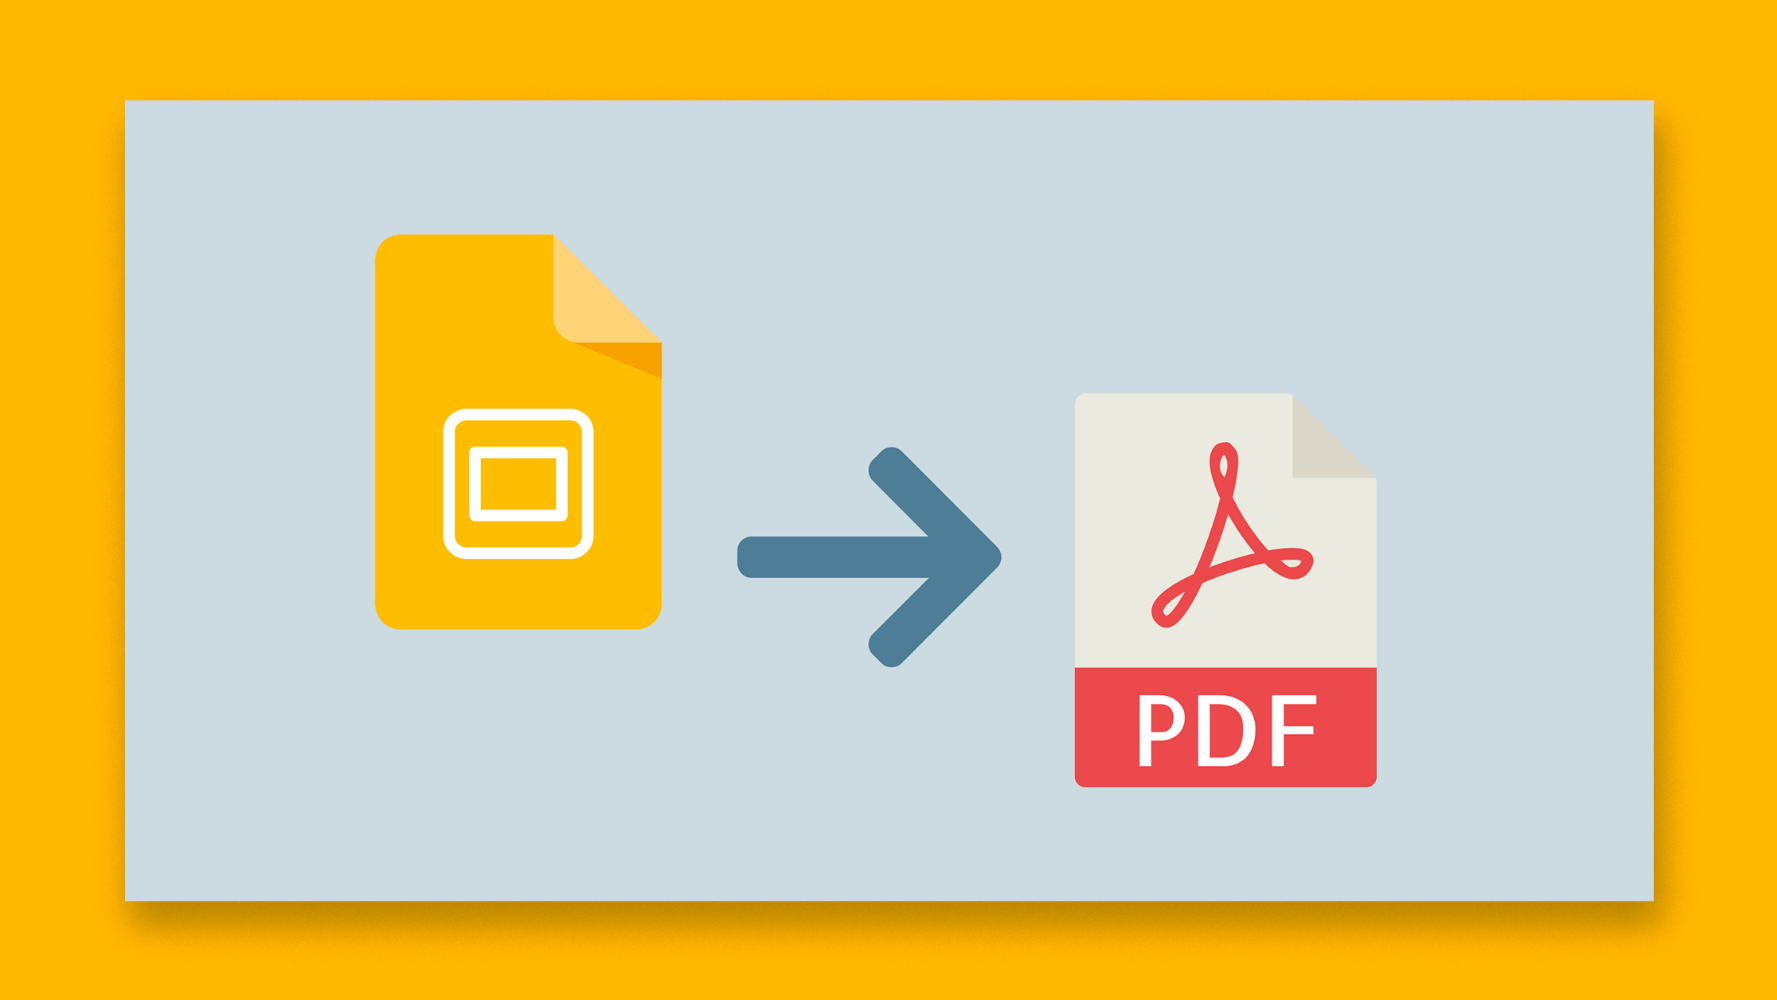 نحوه صادر کردن ارائه اسلایدهای Google خود به عنوان یک فایل PDF | نکات سریع و آموزش برای ارائه های خود